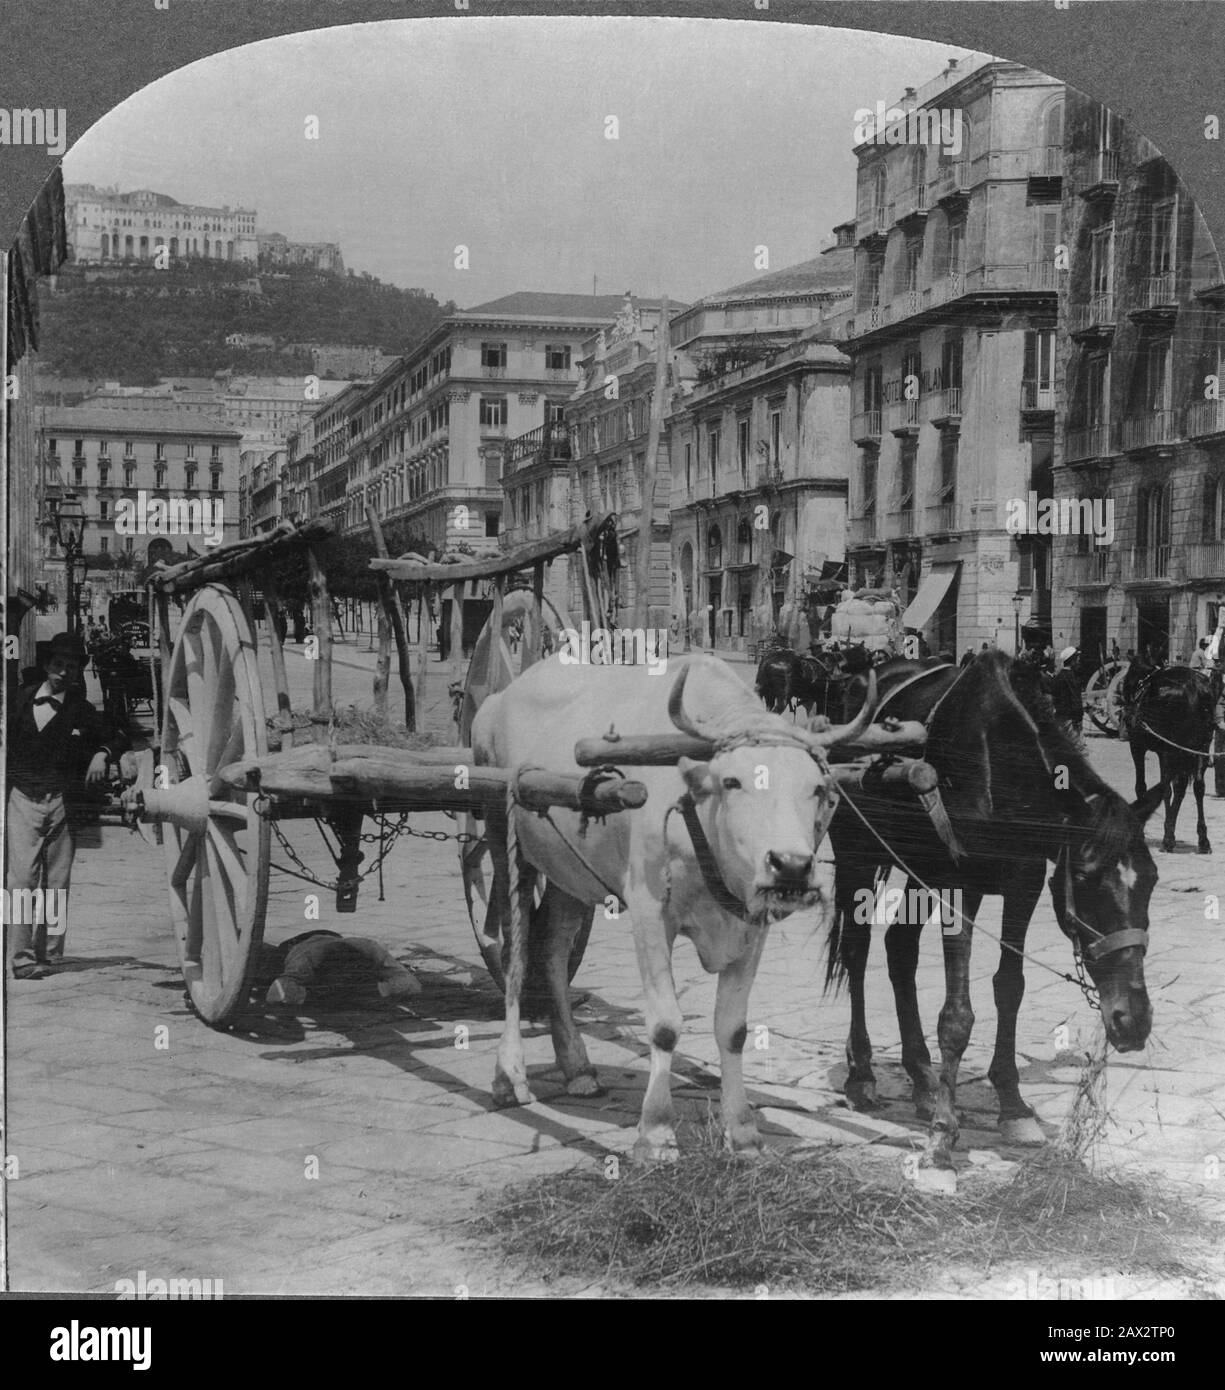 1908 ca, NAPOLI,  ITALY : A Neapolitan team - NAPLES  -  ITALIA - FOTO STORICHE - HISTORY - GEOGRAFIA - GEOGRAPHY  - ARCHITETTURA - ARCHITECTURE - bue - cavallo da traino - horse - carro - carretto - Capodimonte  -  --- Archivio GBB Stock Photo